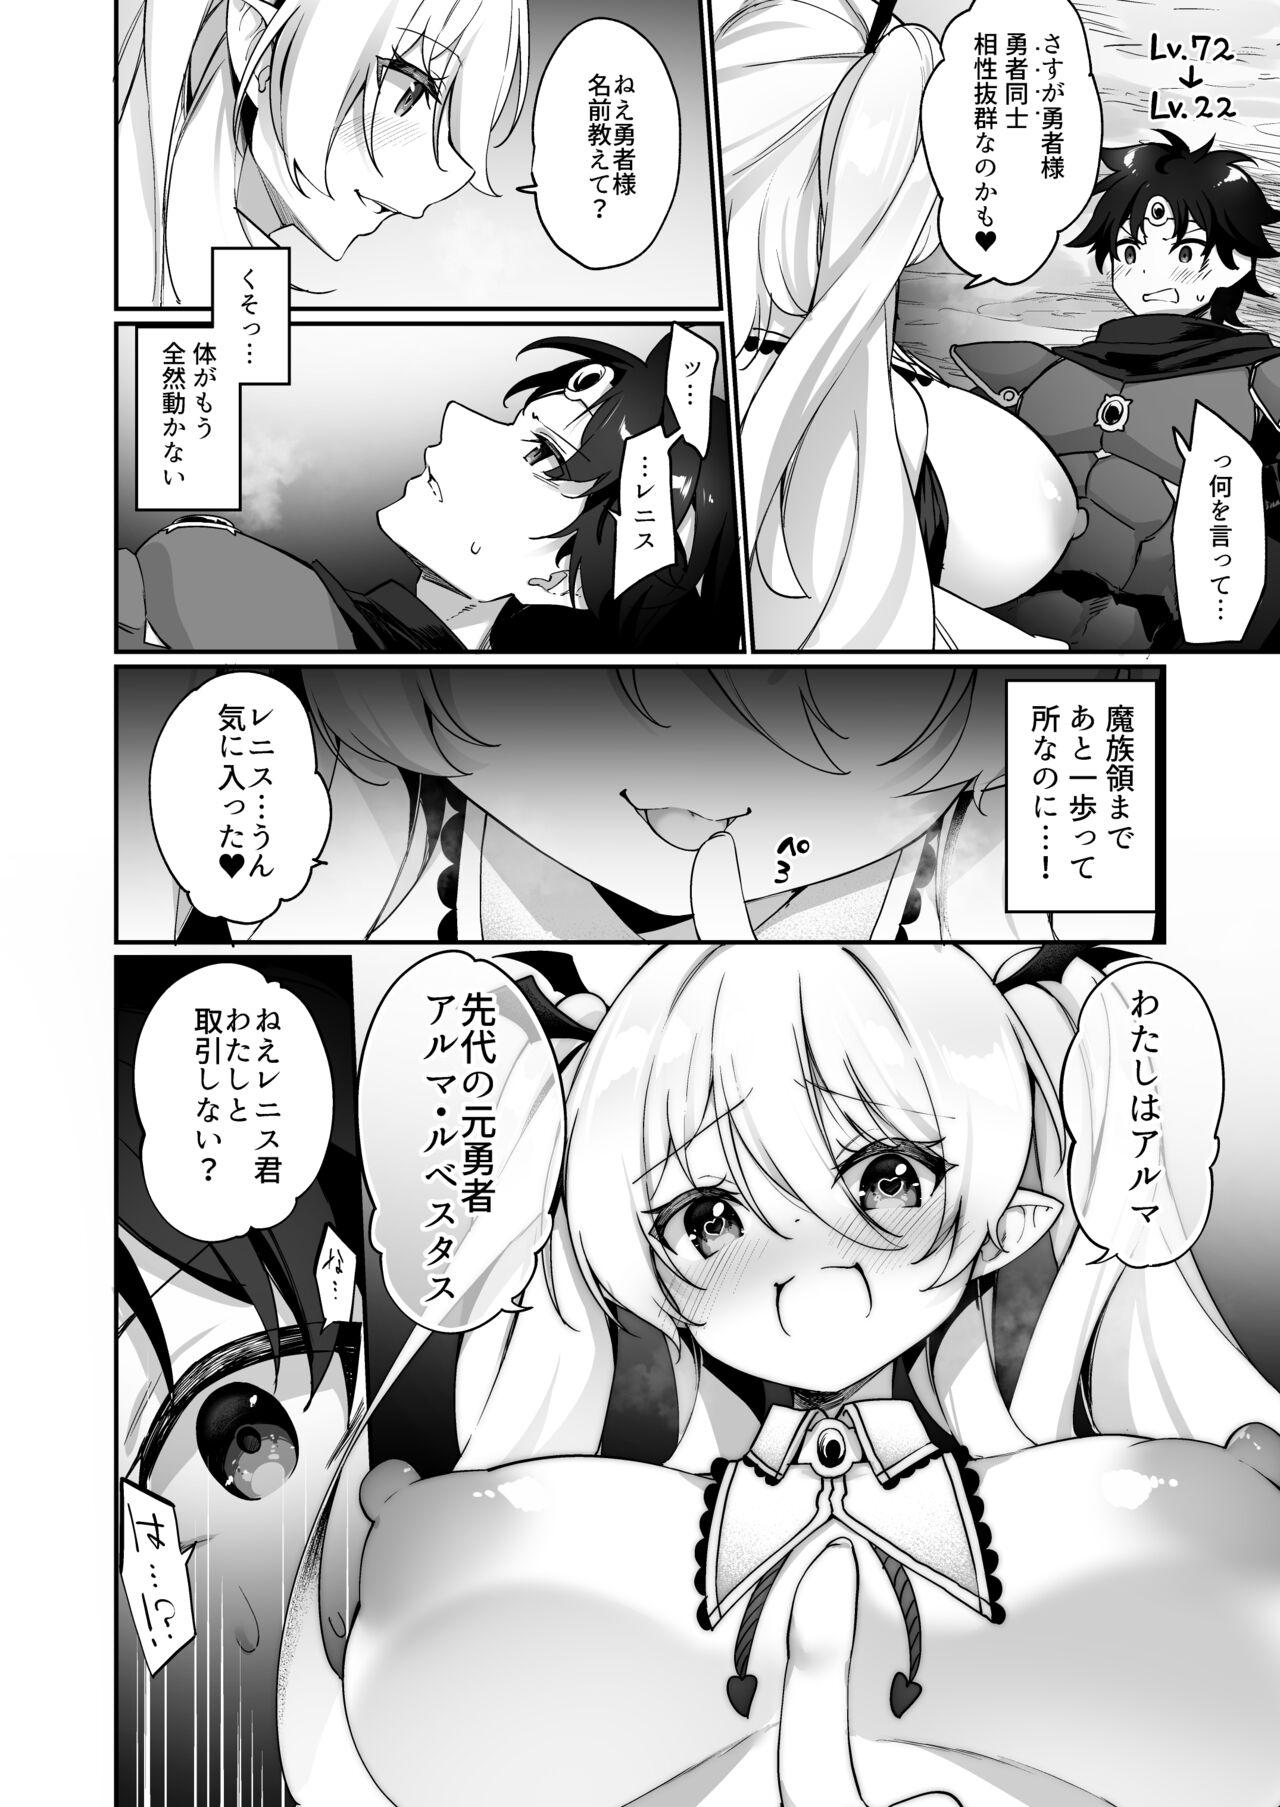 Rubdown Maou ni idonda yusha ga sakyubasu ni ochite iku hanashi - Original Blowing - Page 4